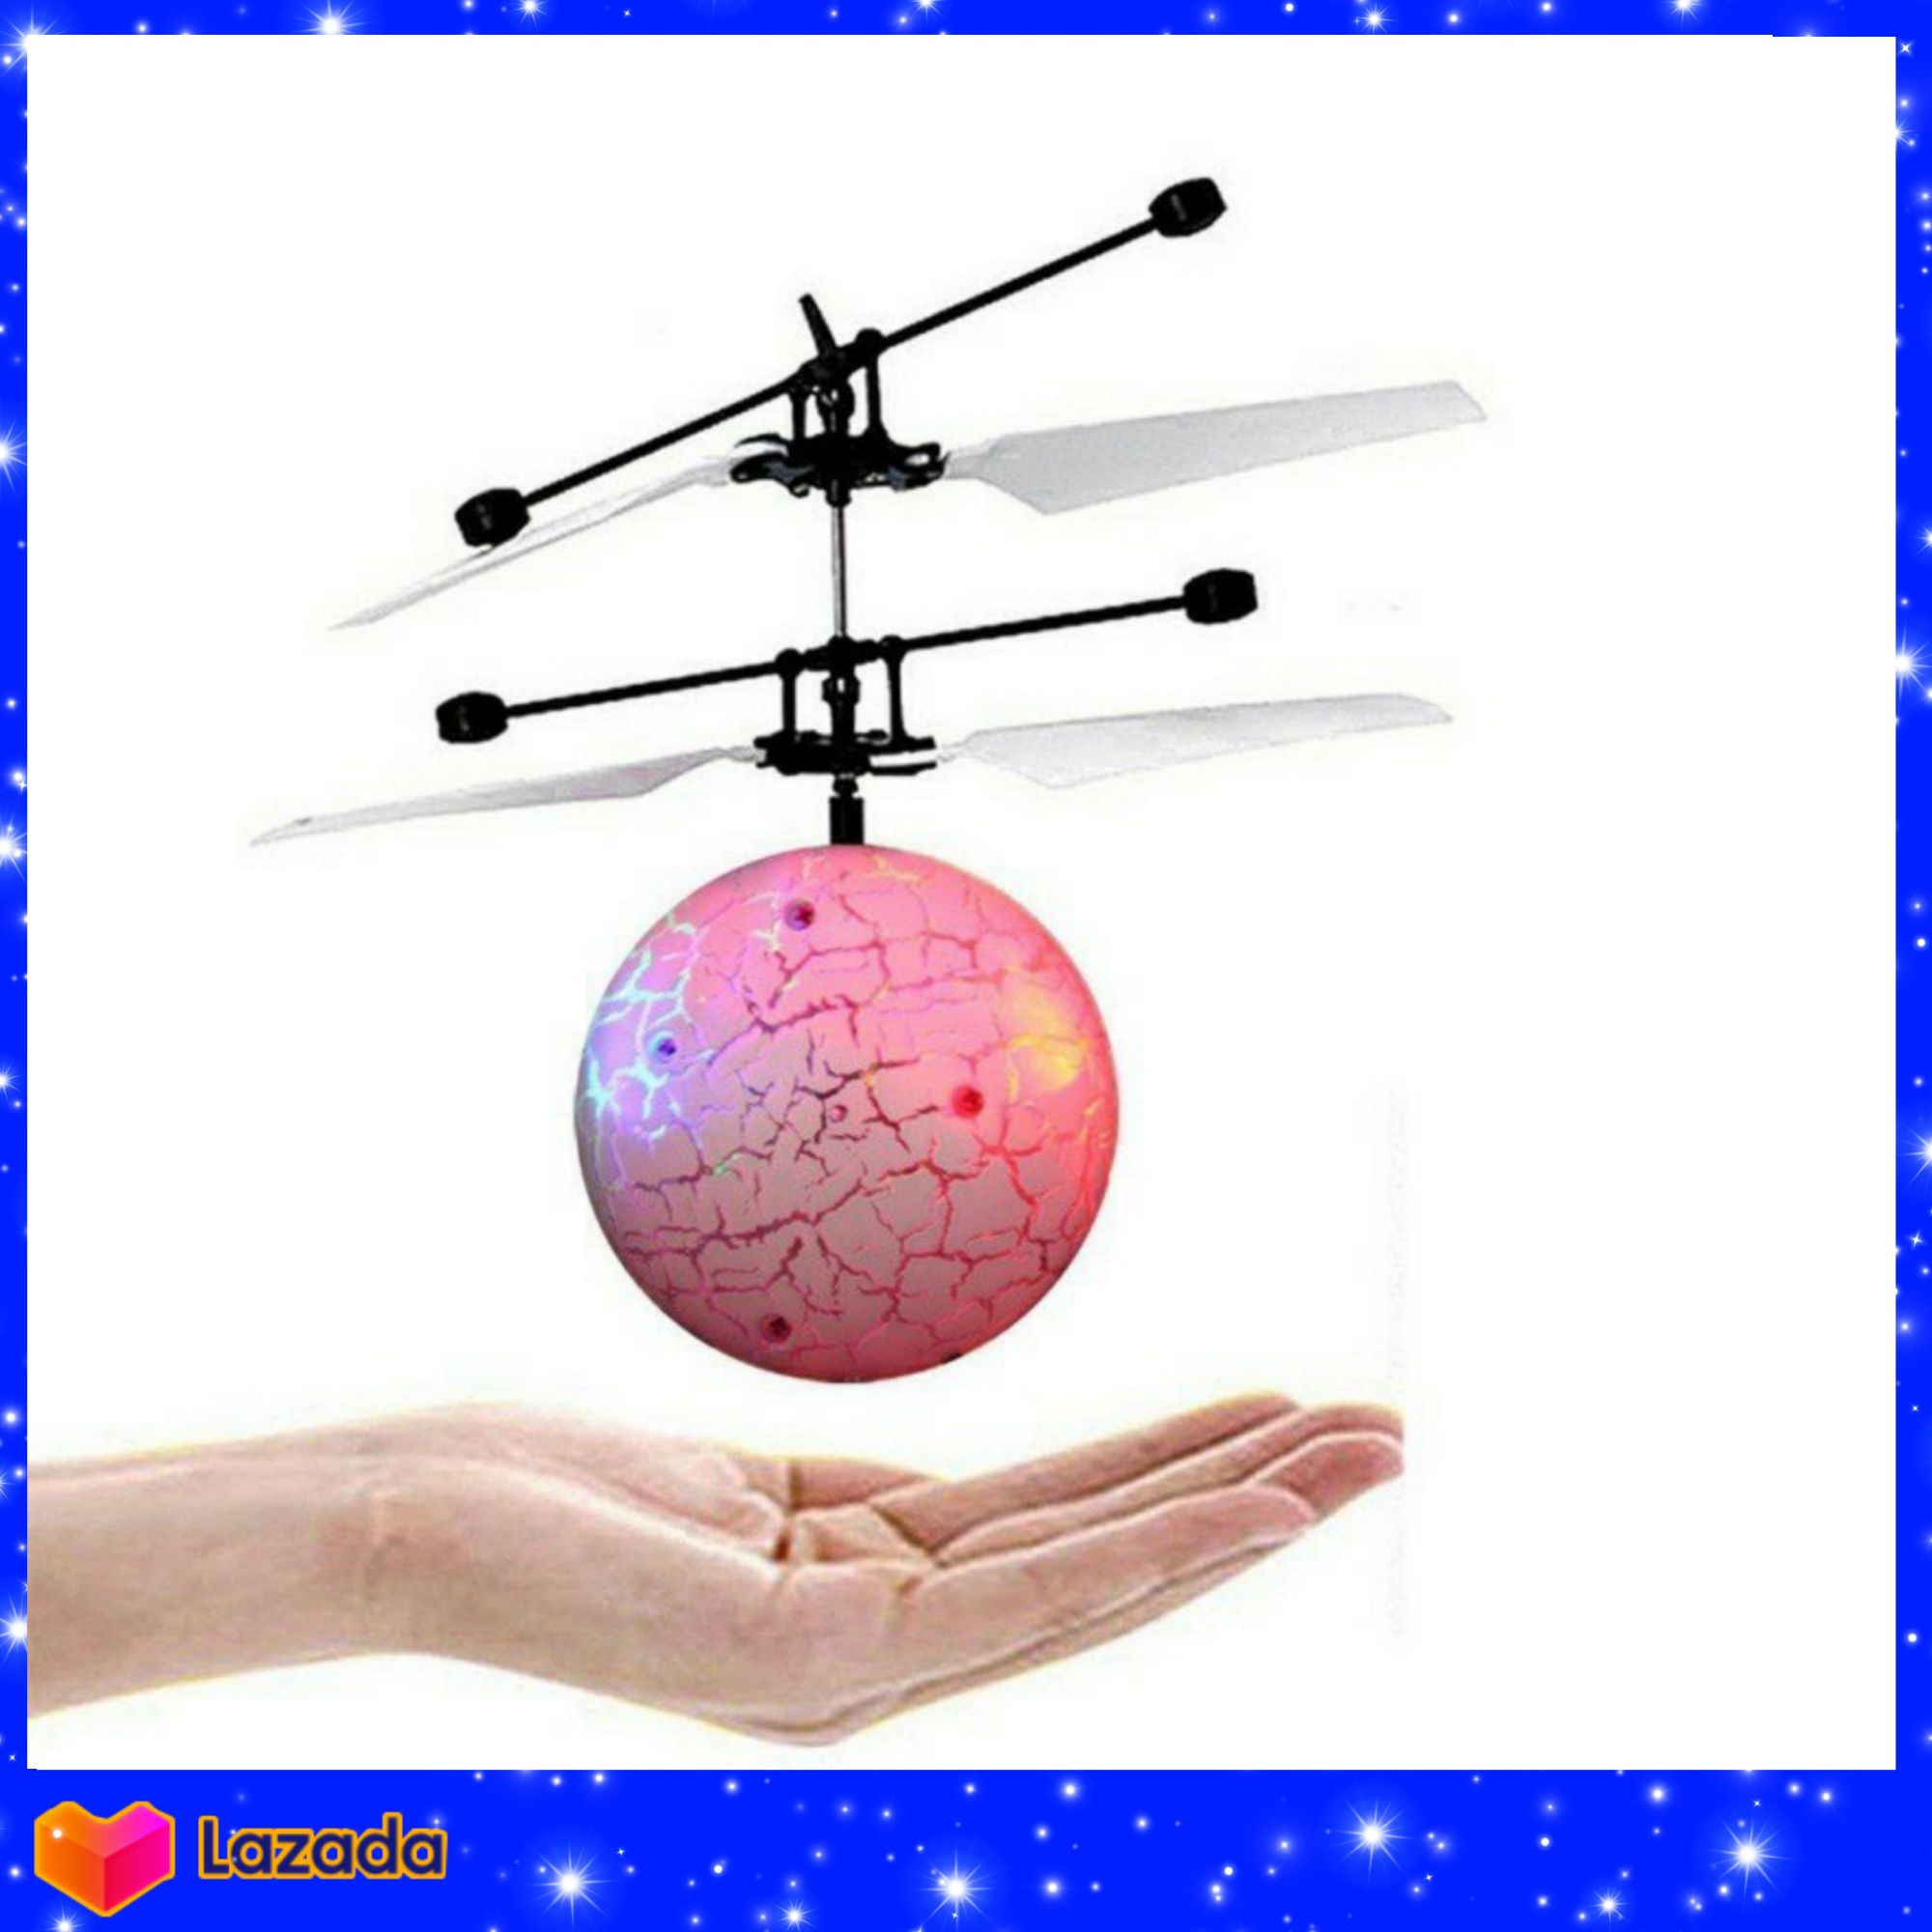 ลูกบอลบิน บอลบิน Flying ball มีไฟ เครื่องบิน มีเซ็นเซอร์ ของเล่น ของขวัญเด็ก สวยมาก